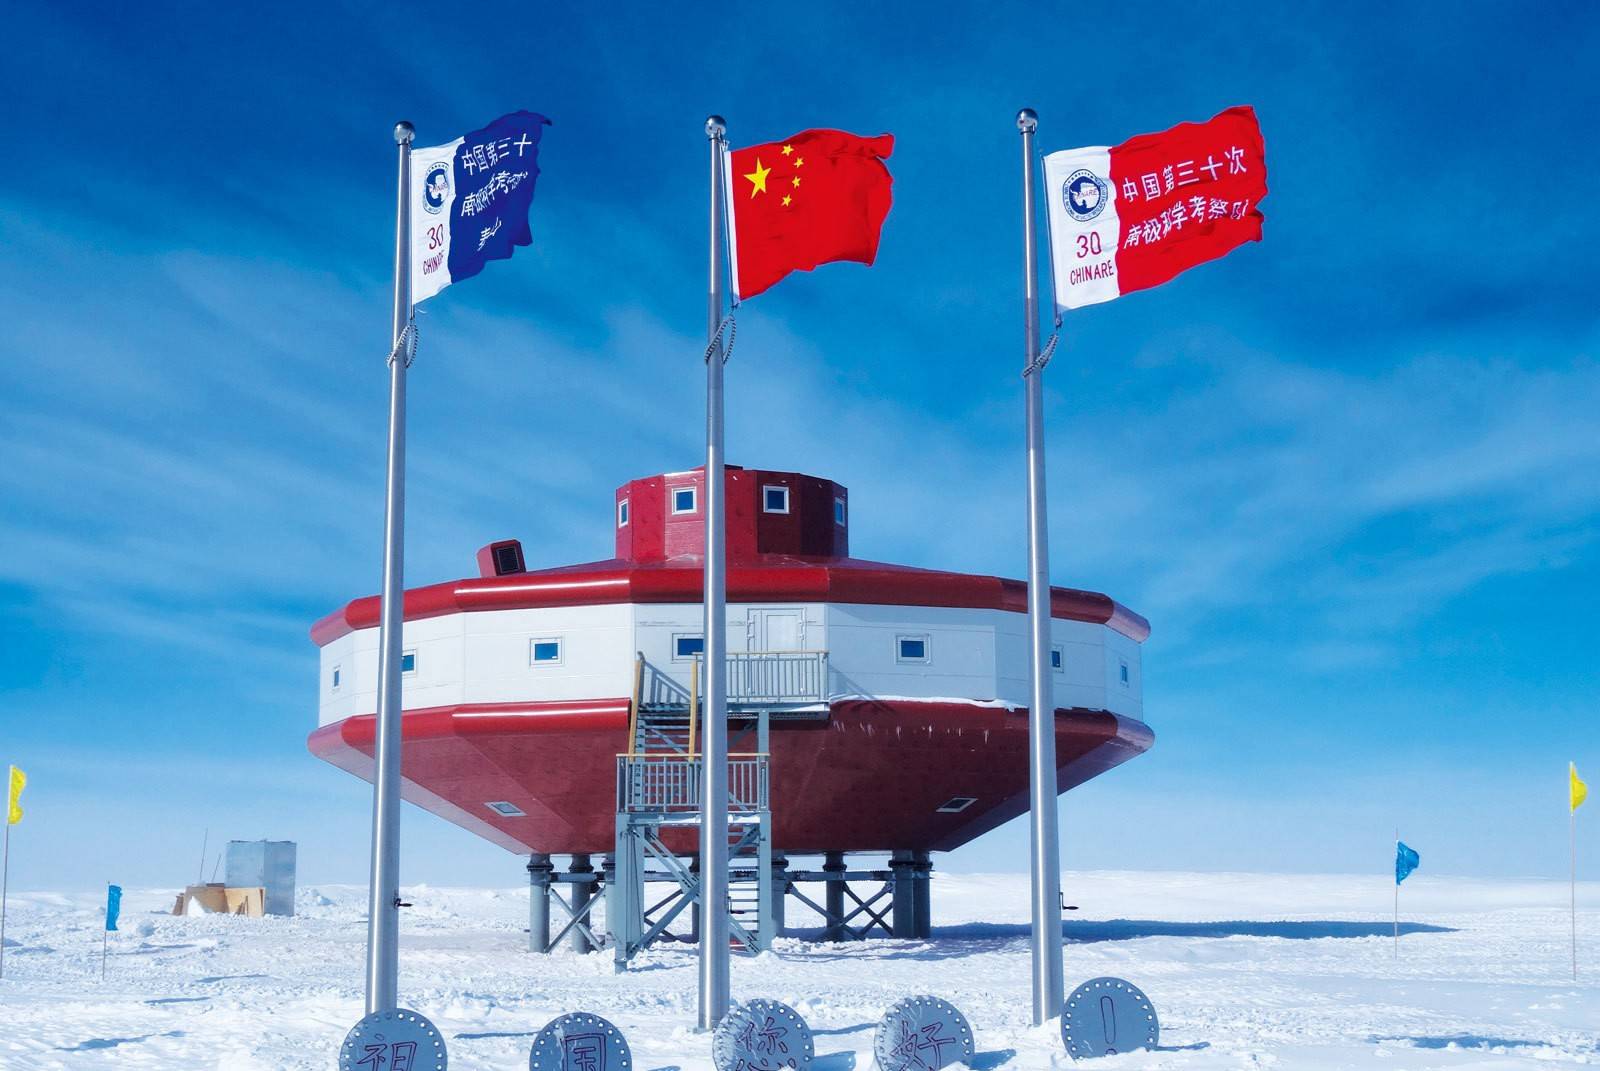  中国南极泰山站>它将成为中国昆仑站科学考察的前沿支撑还将成为